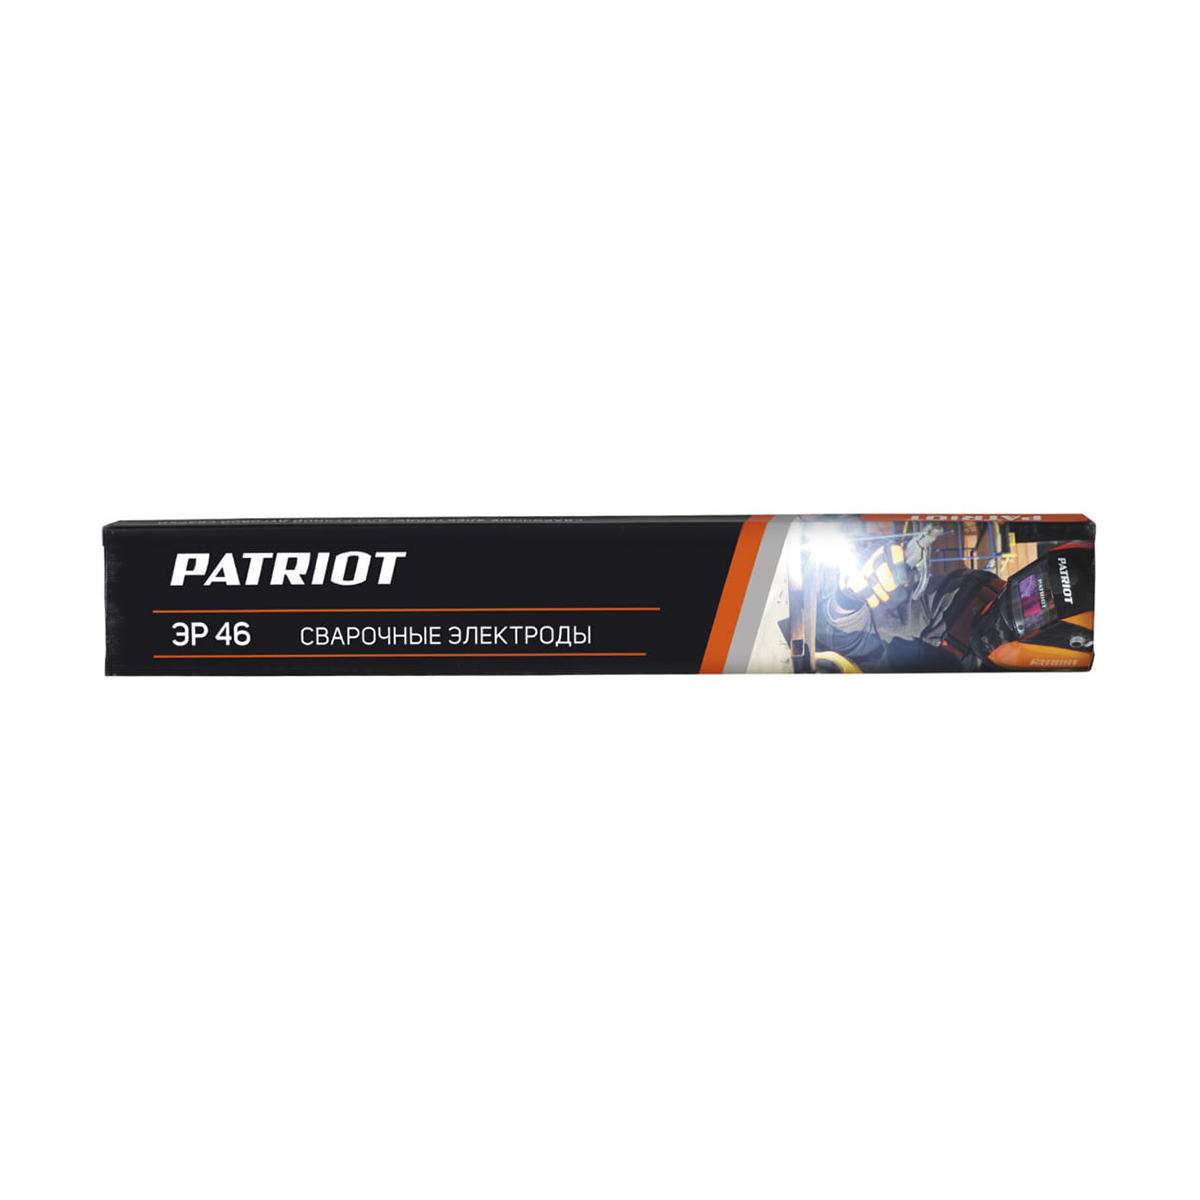 Электроды сварочные Patriot ЭР 46, 3 мм, 1 кг электроды patriot мр 3с 4 0mm 1kg 605012010